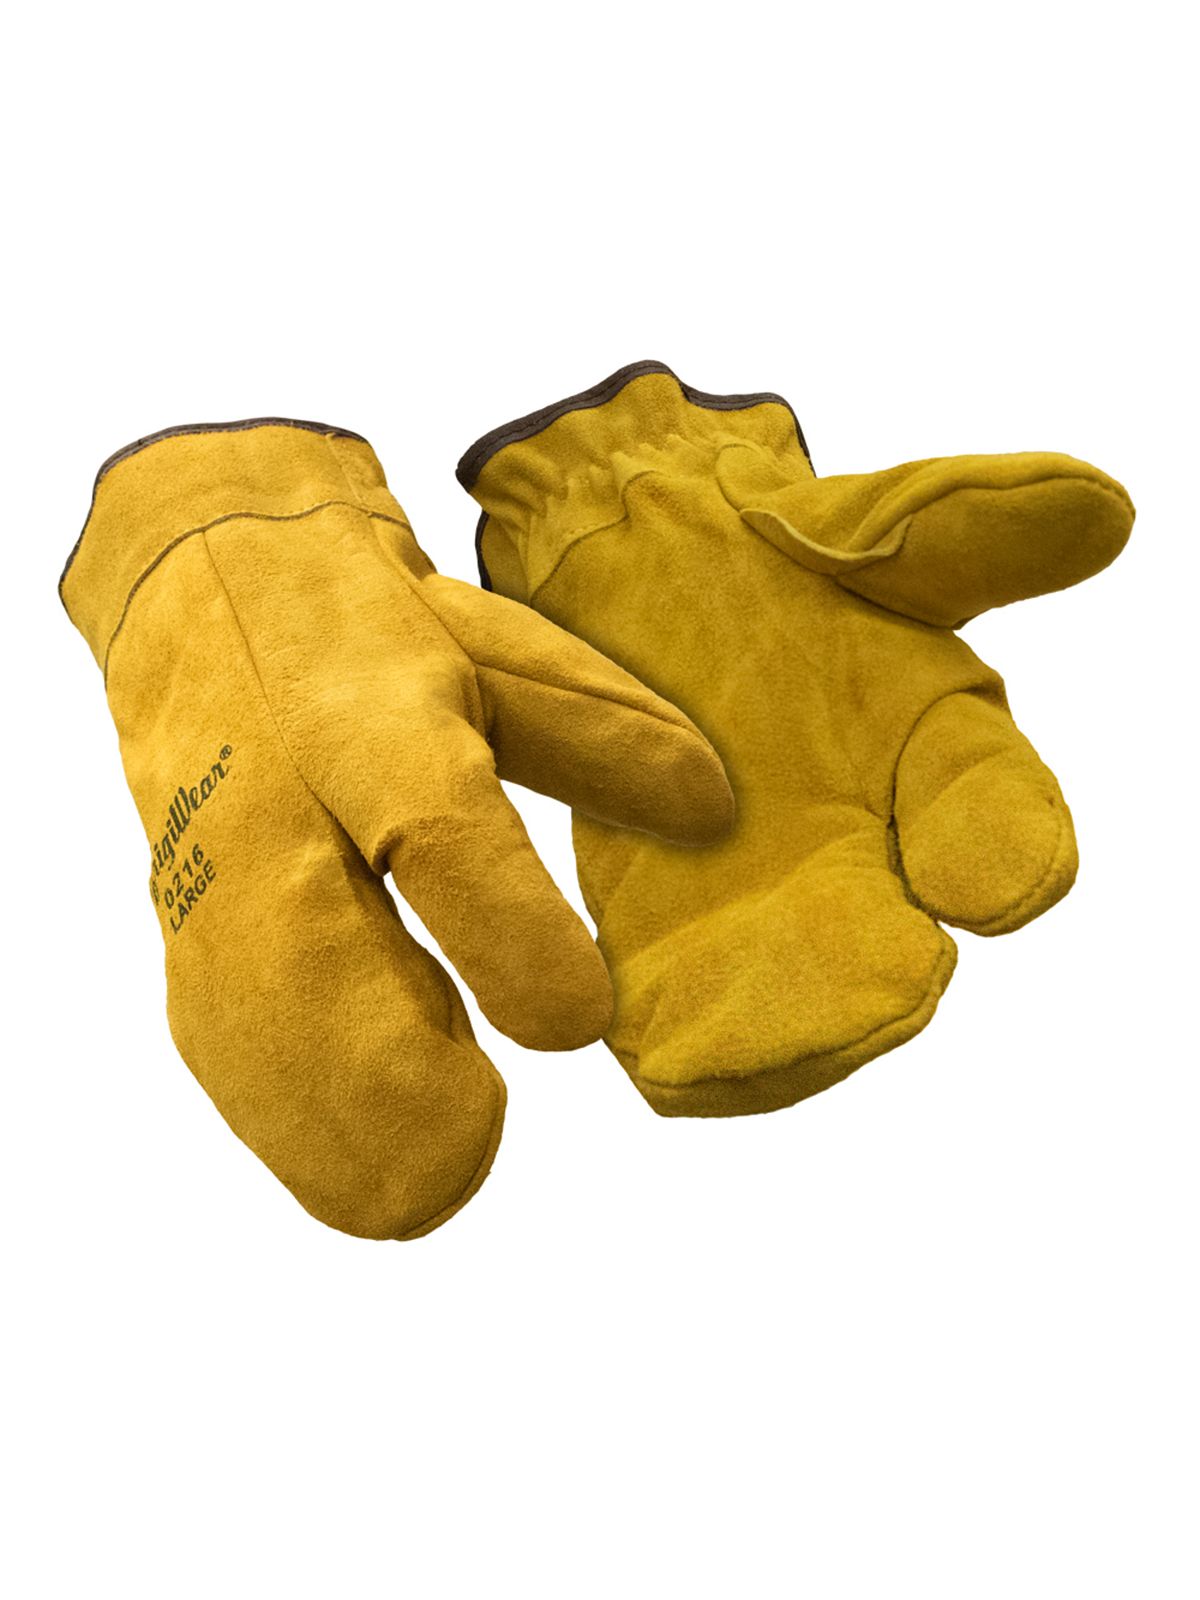 перчатки мужские из козьей кожи кожаные дышащие митенки с открытыми пальцами с тонкой пряжкой черные уличные спортивные митенки для вожд Кожаные перчатки-митенки с тремя пальцами RefrigiWear